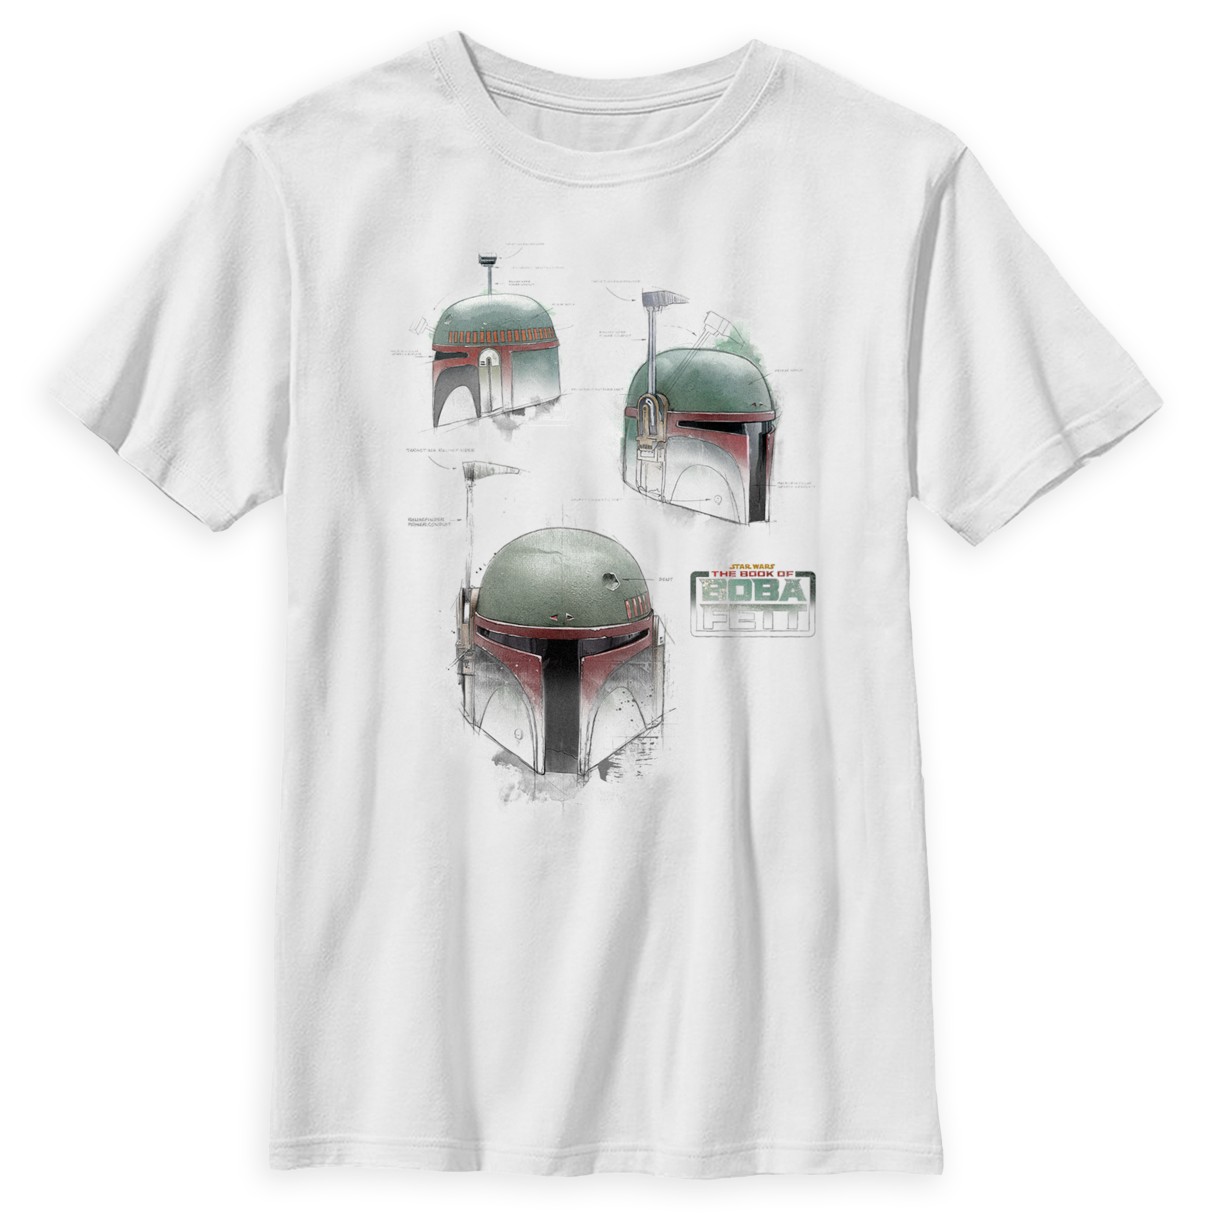 Boba Fett Helmet T-Shirt for Kids – Star Wars